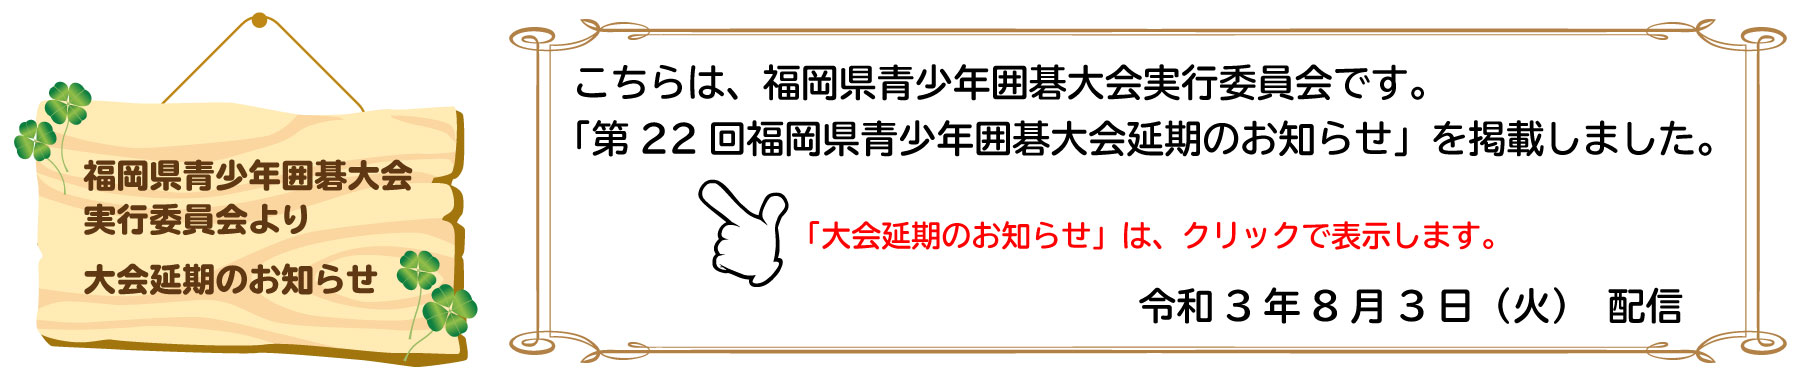 第22回福岡県青少年囲碁大会延期のお知らせ